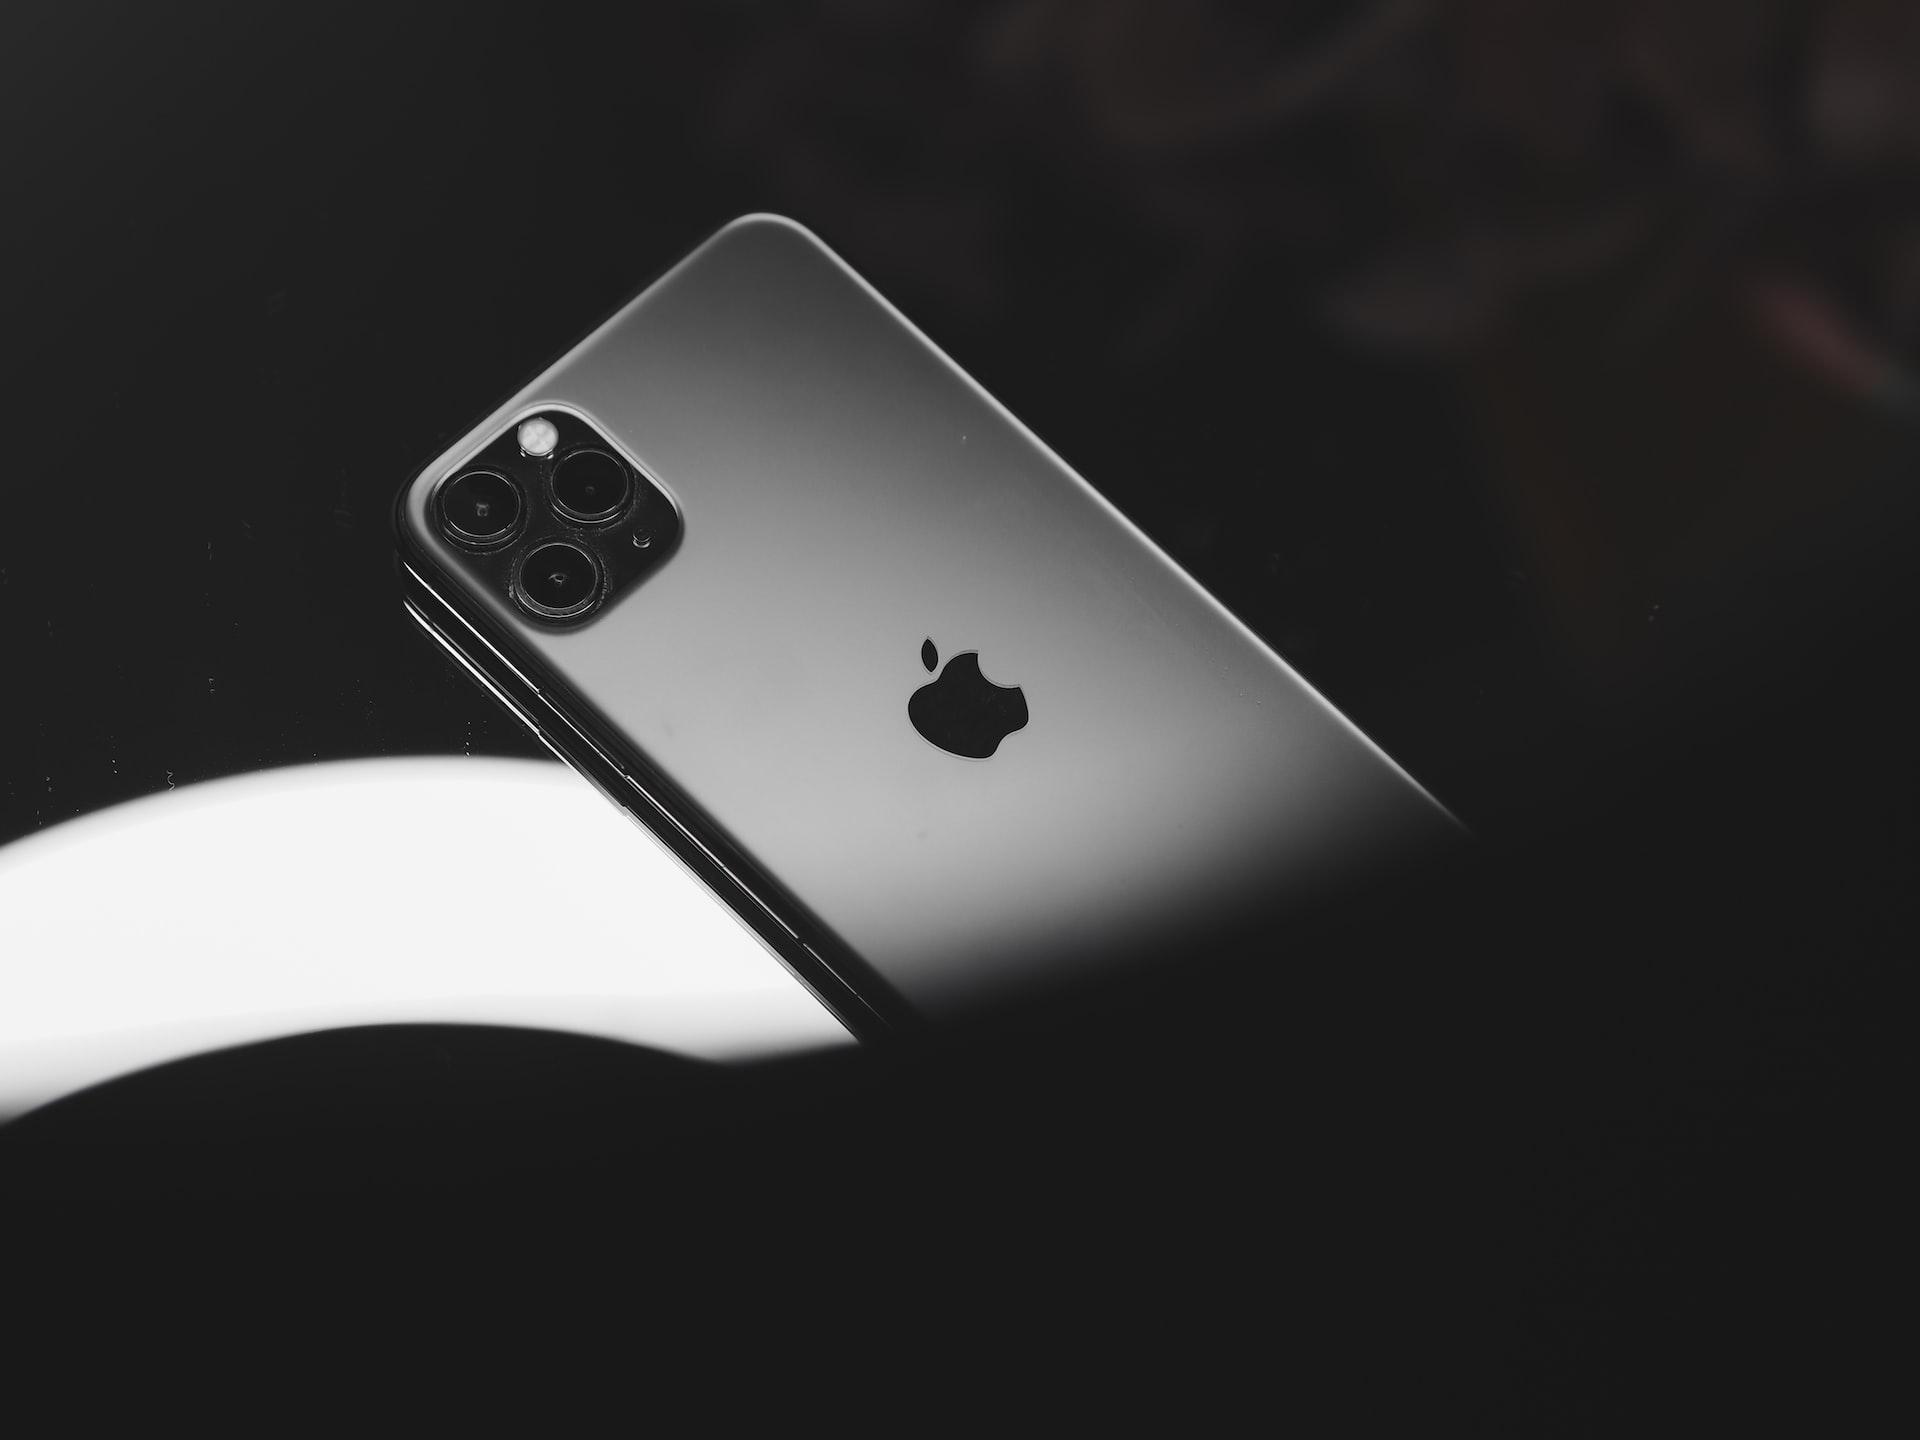 Em 2017, a Qualcomm alegou que os iPhones infringiram o uso de tecnologias móveis pela empresa.